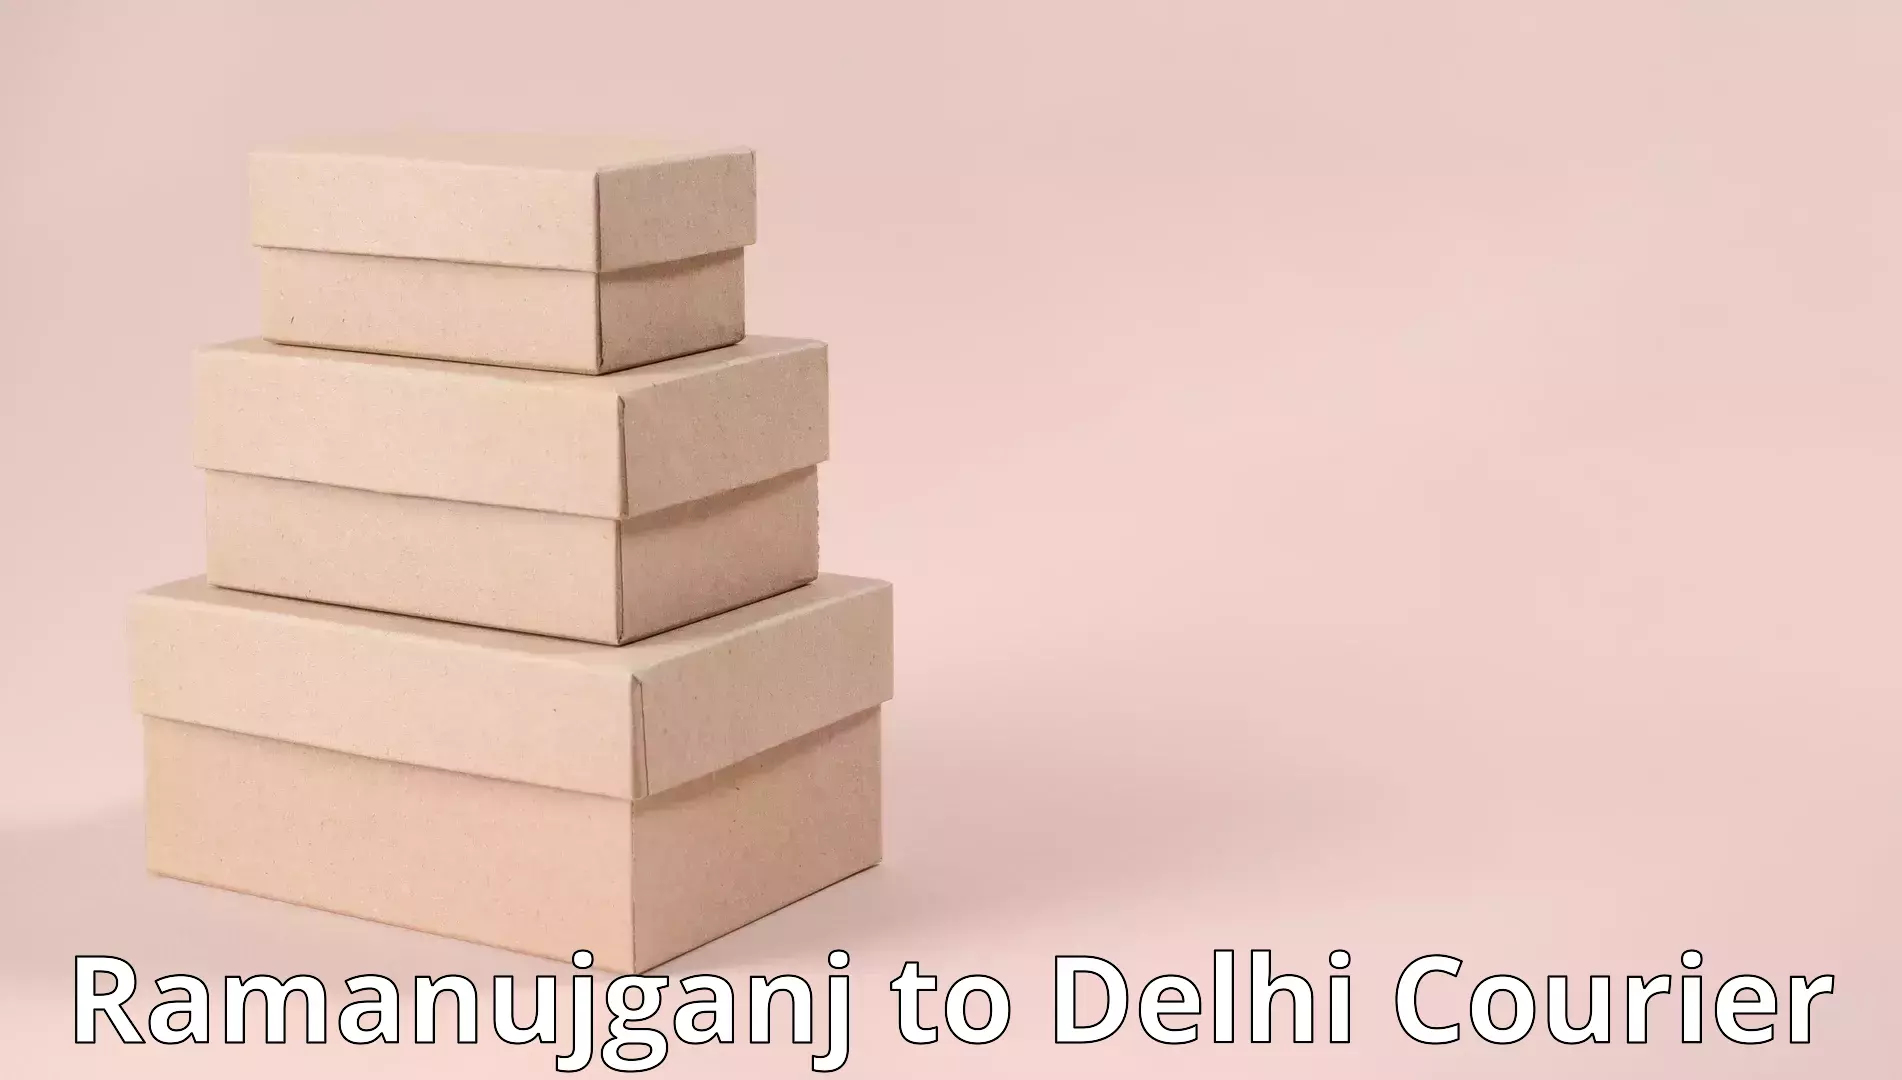 Furniture transport experts Ramanujganj to Delhi